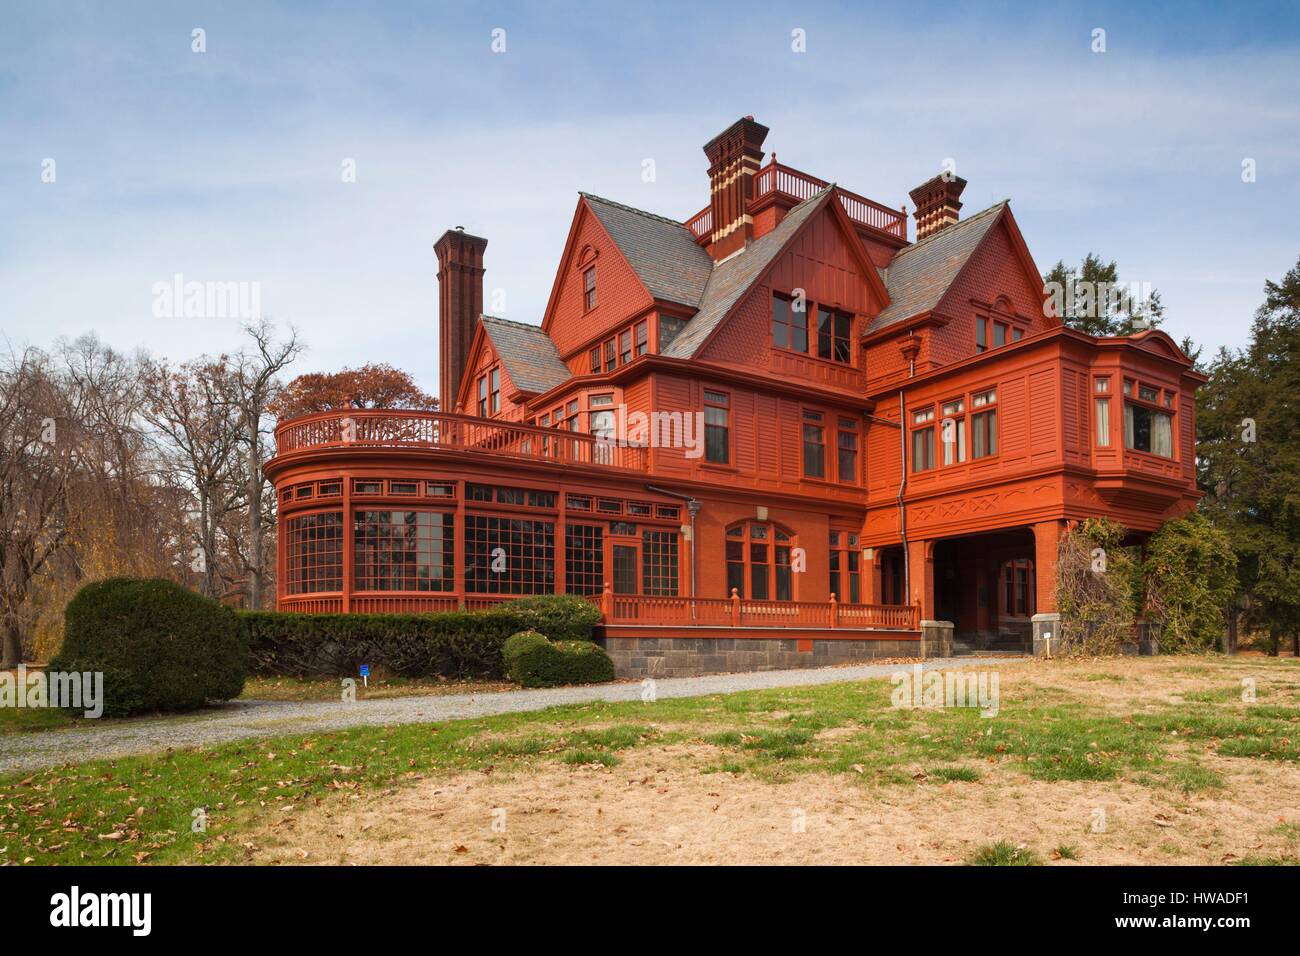 United States, New Jersey, West Orange, Thomas Edison National Historical Park, Glenmont, former home of Thomas Edison Stock Photo